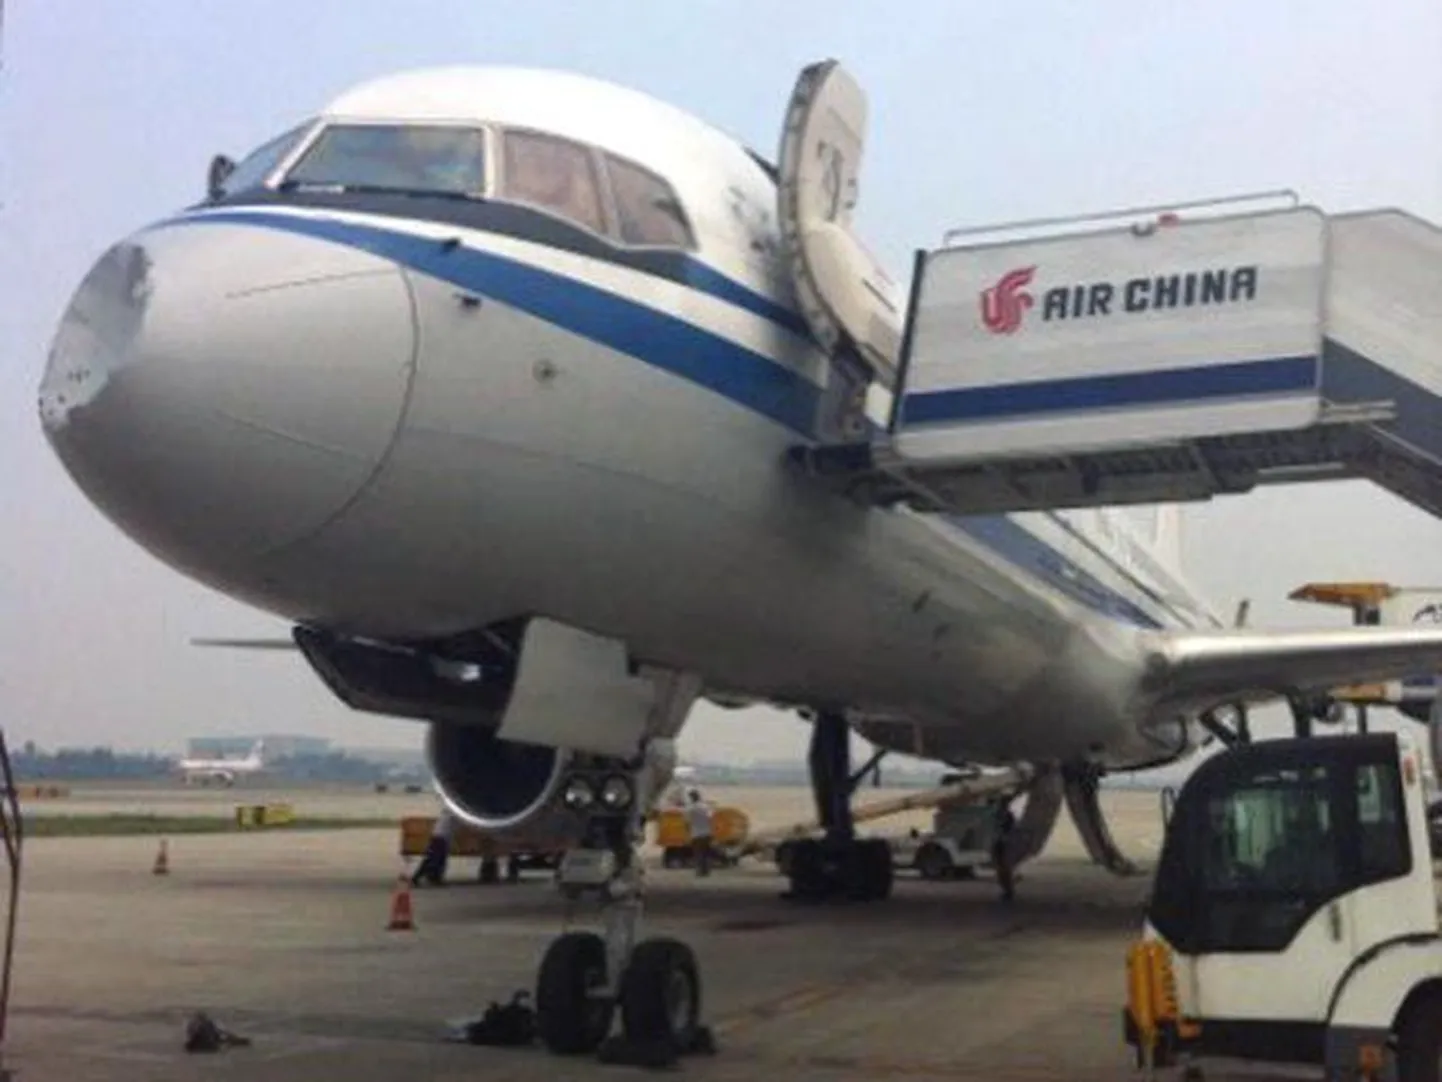 Рейс пассажирского самолета китайской авиакомпании Air China едва не закончился трагедией из-за загадочного происшествия, случившегося в воздухе.